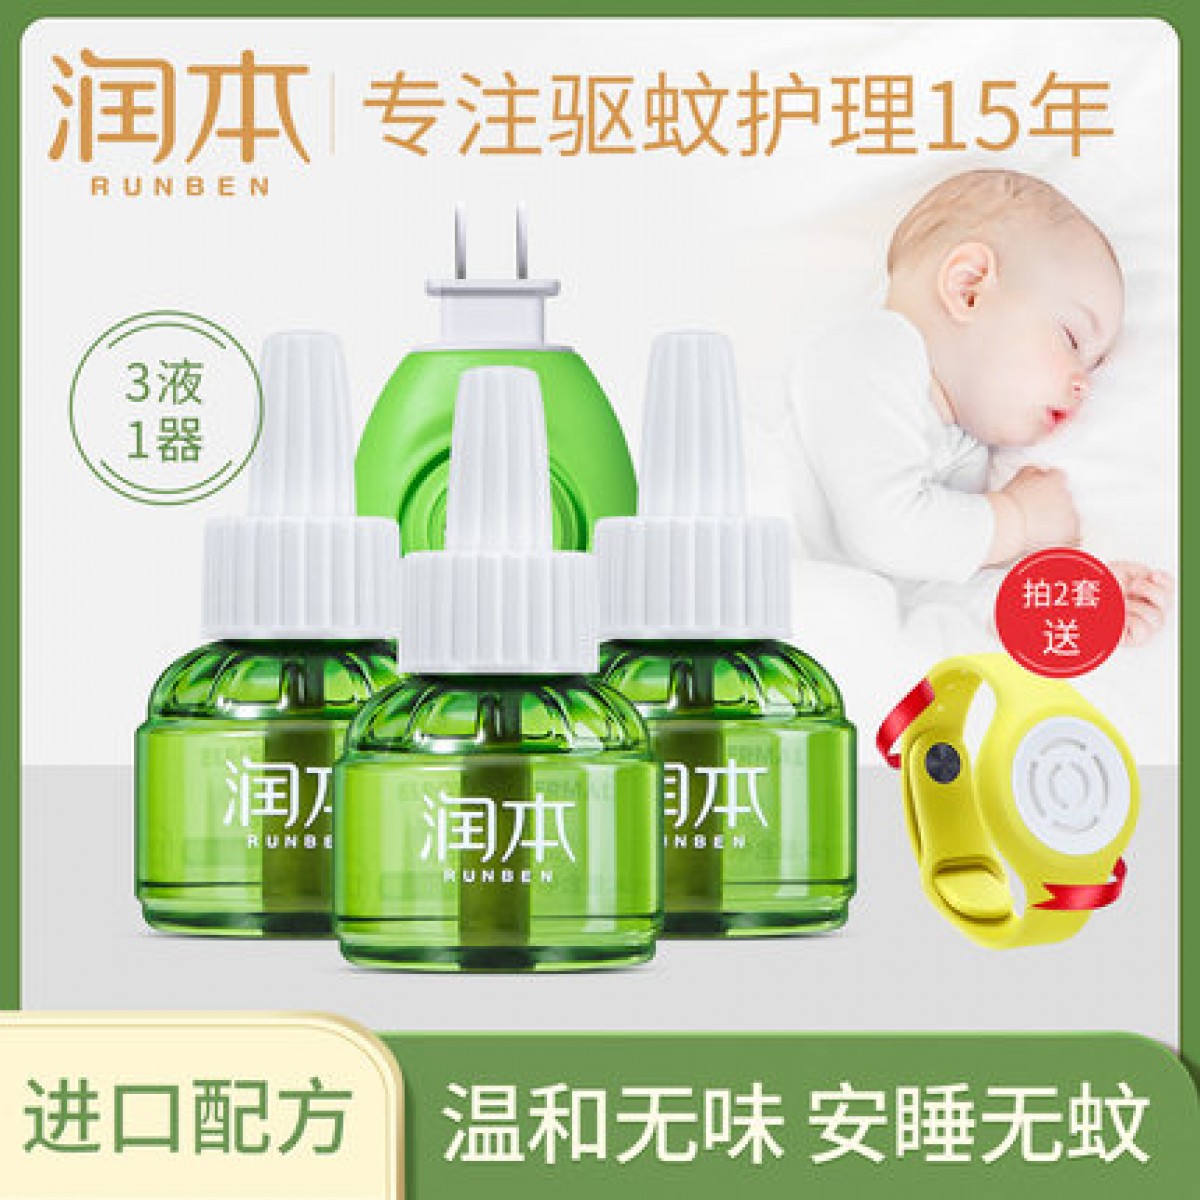 润本蚊香液婴儿家用孕妇宝宝专用插电蚊香器电灭蚊水驱蚊液补充装